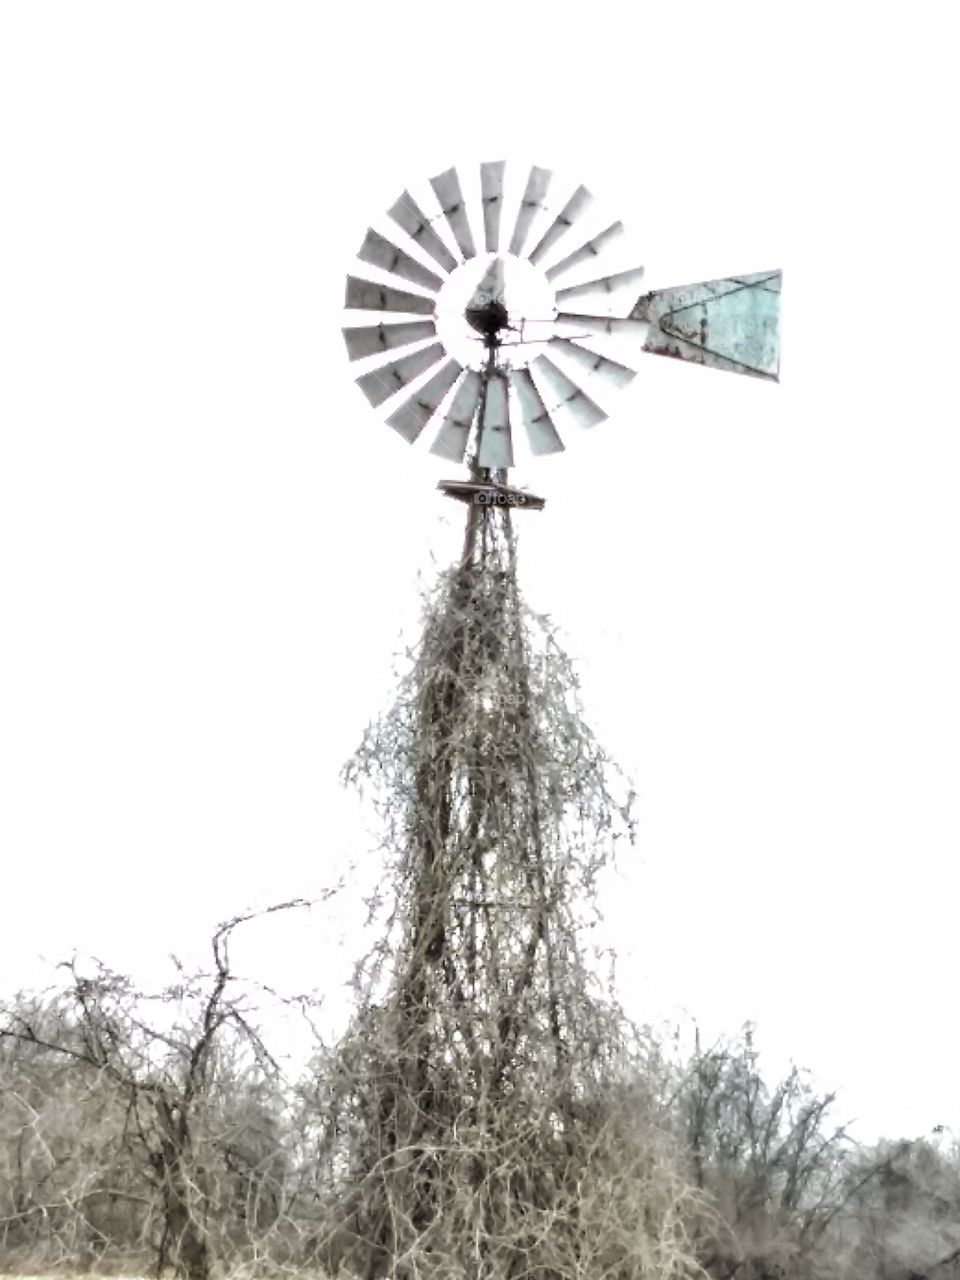 A windmill that still turns... rural Missouri.